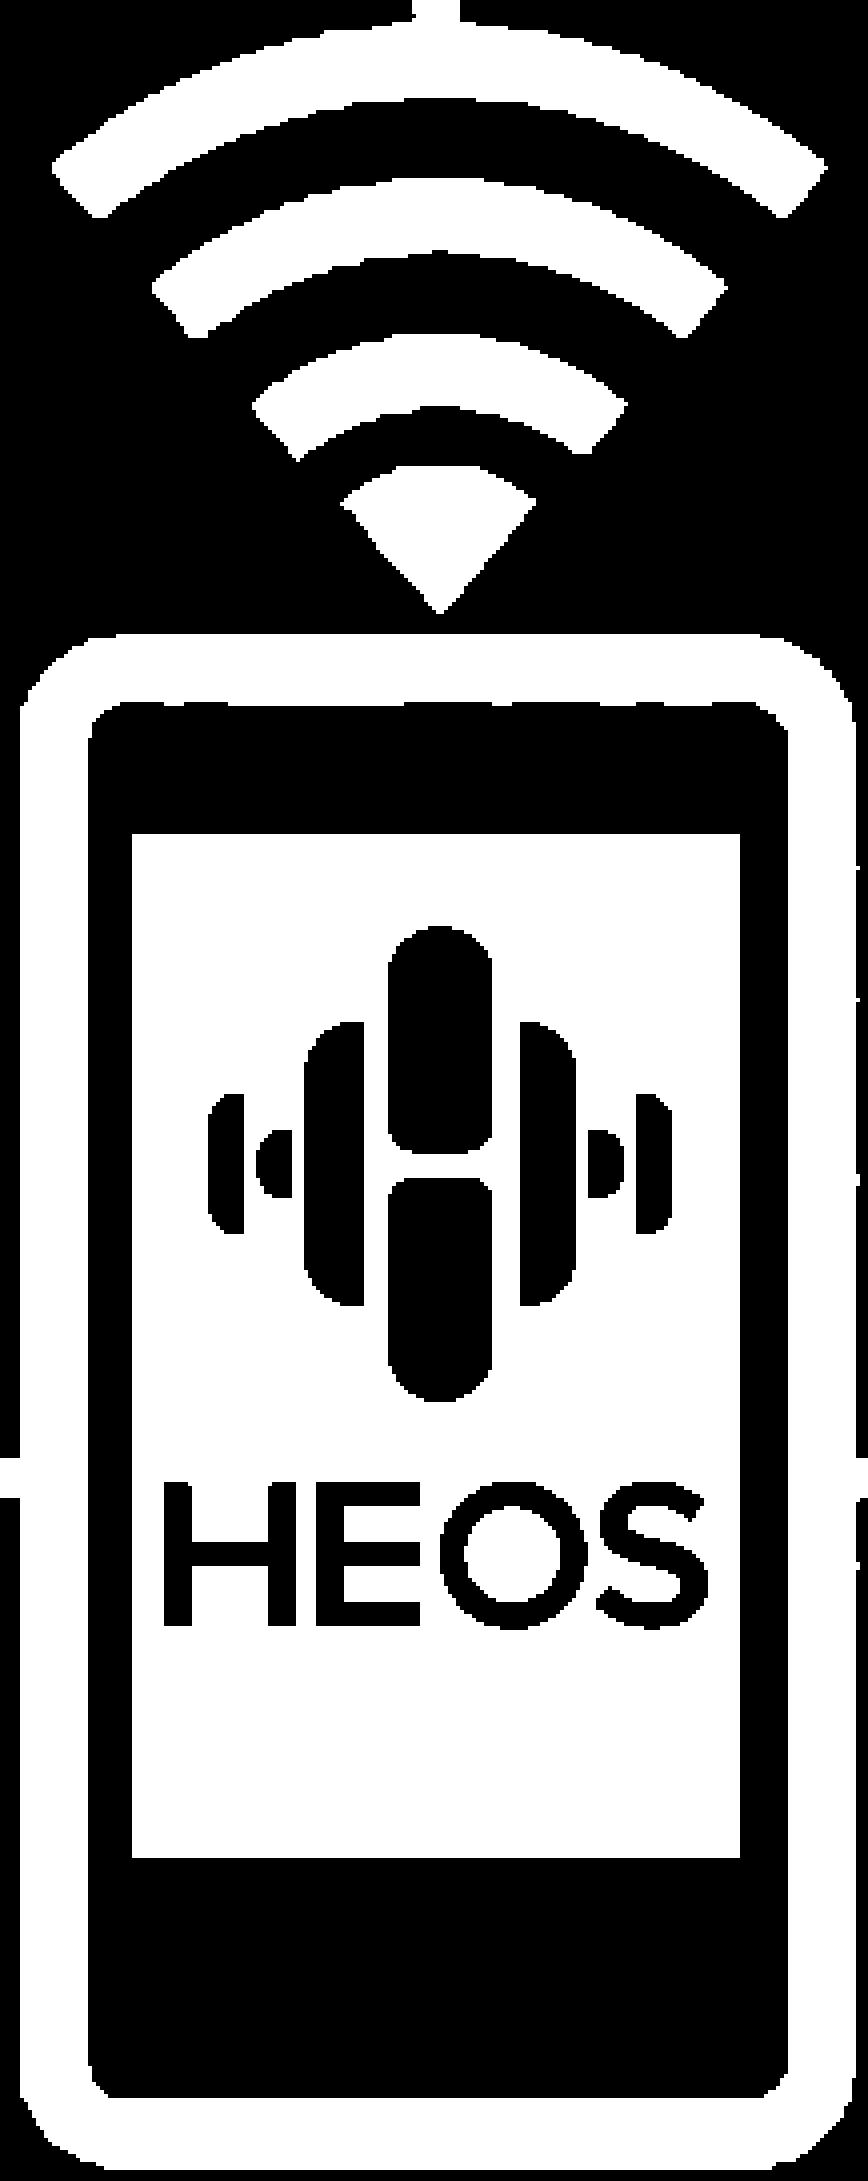 0 HEOS levererar strömmad musik från dina favorit musikkällor online 0 Har stöd för uppspelning av MP3- och WMA-filer från CD MP3- eller WMA-filer som har spelats in på en CD-R- eller CD-RW-skiva kan